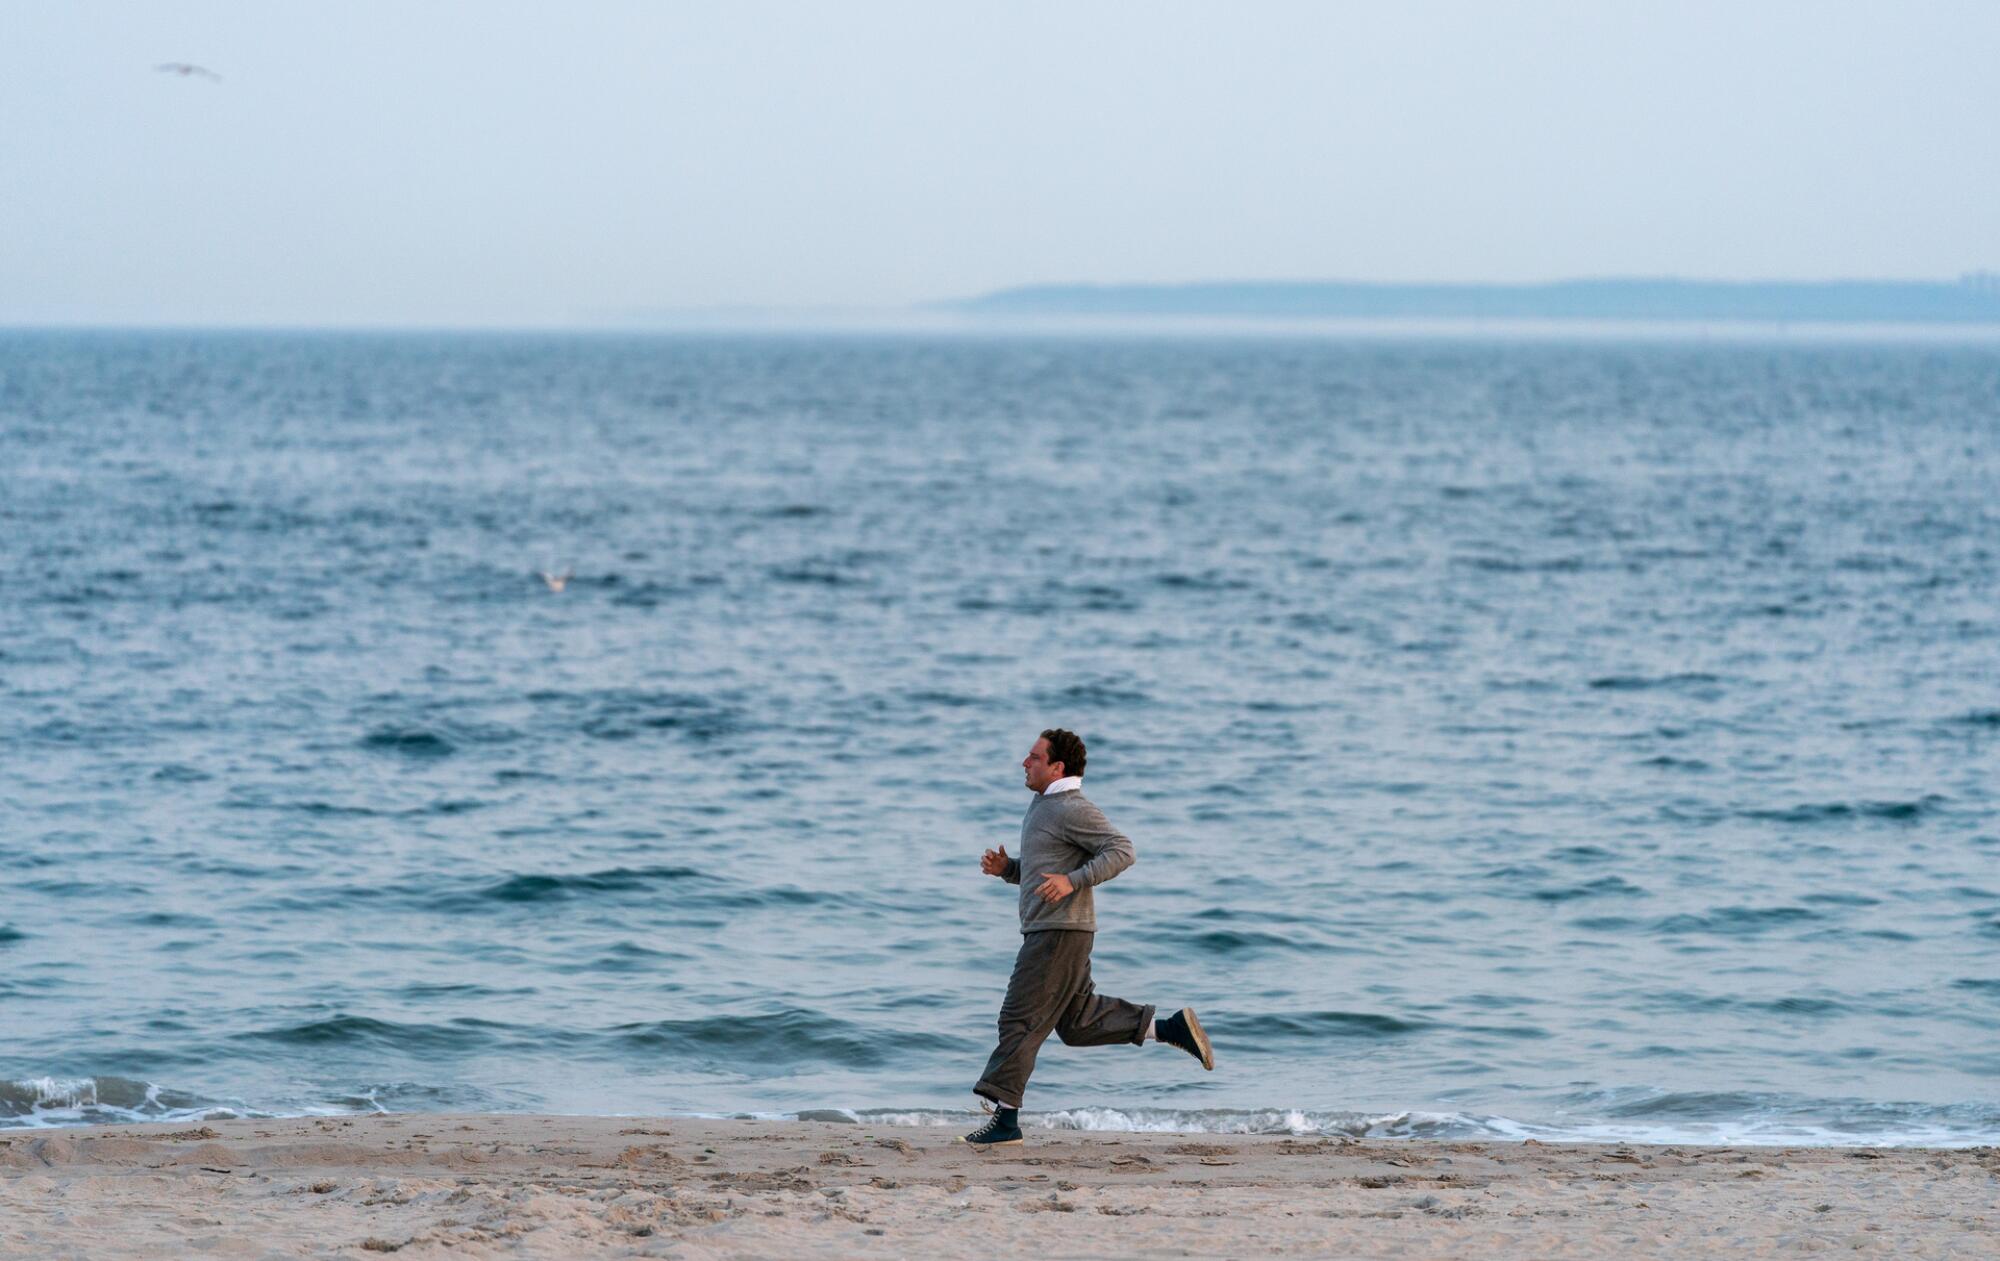 A man jogs along a beach.